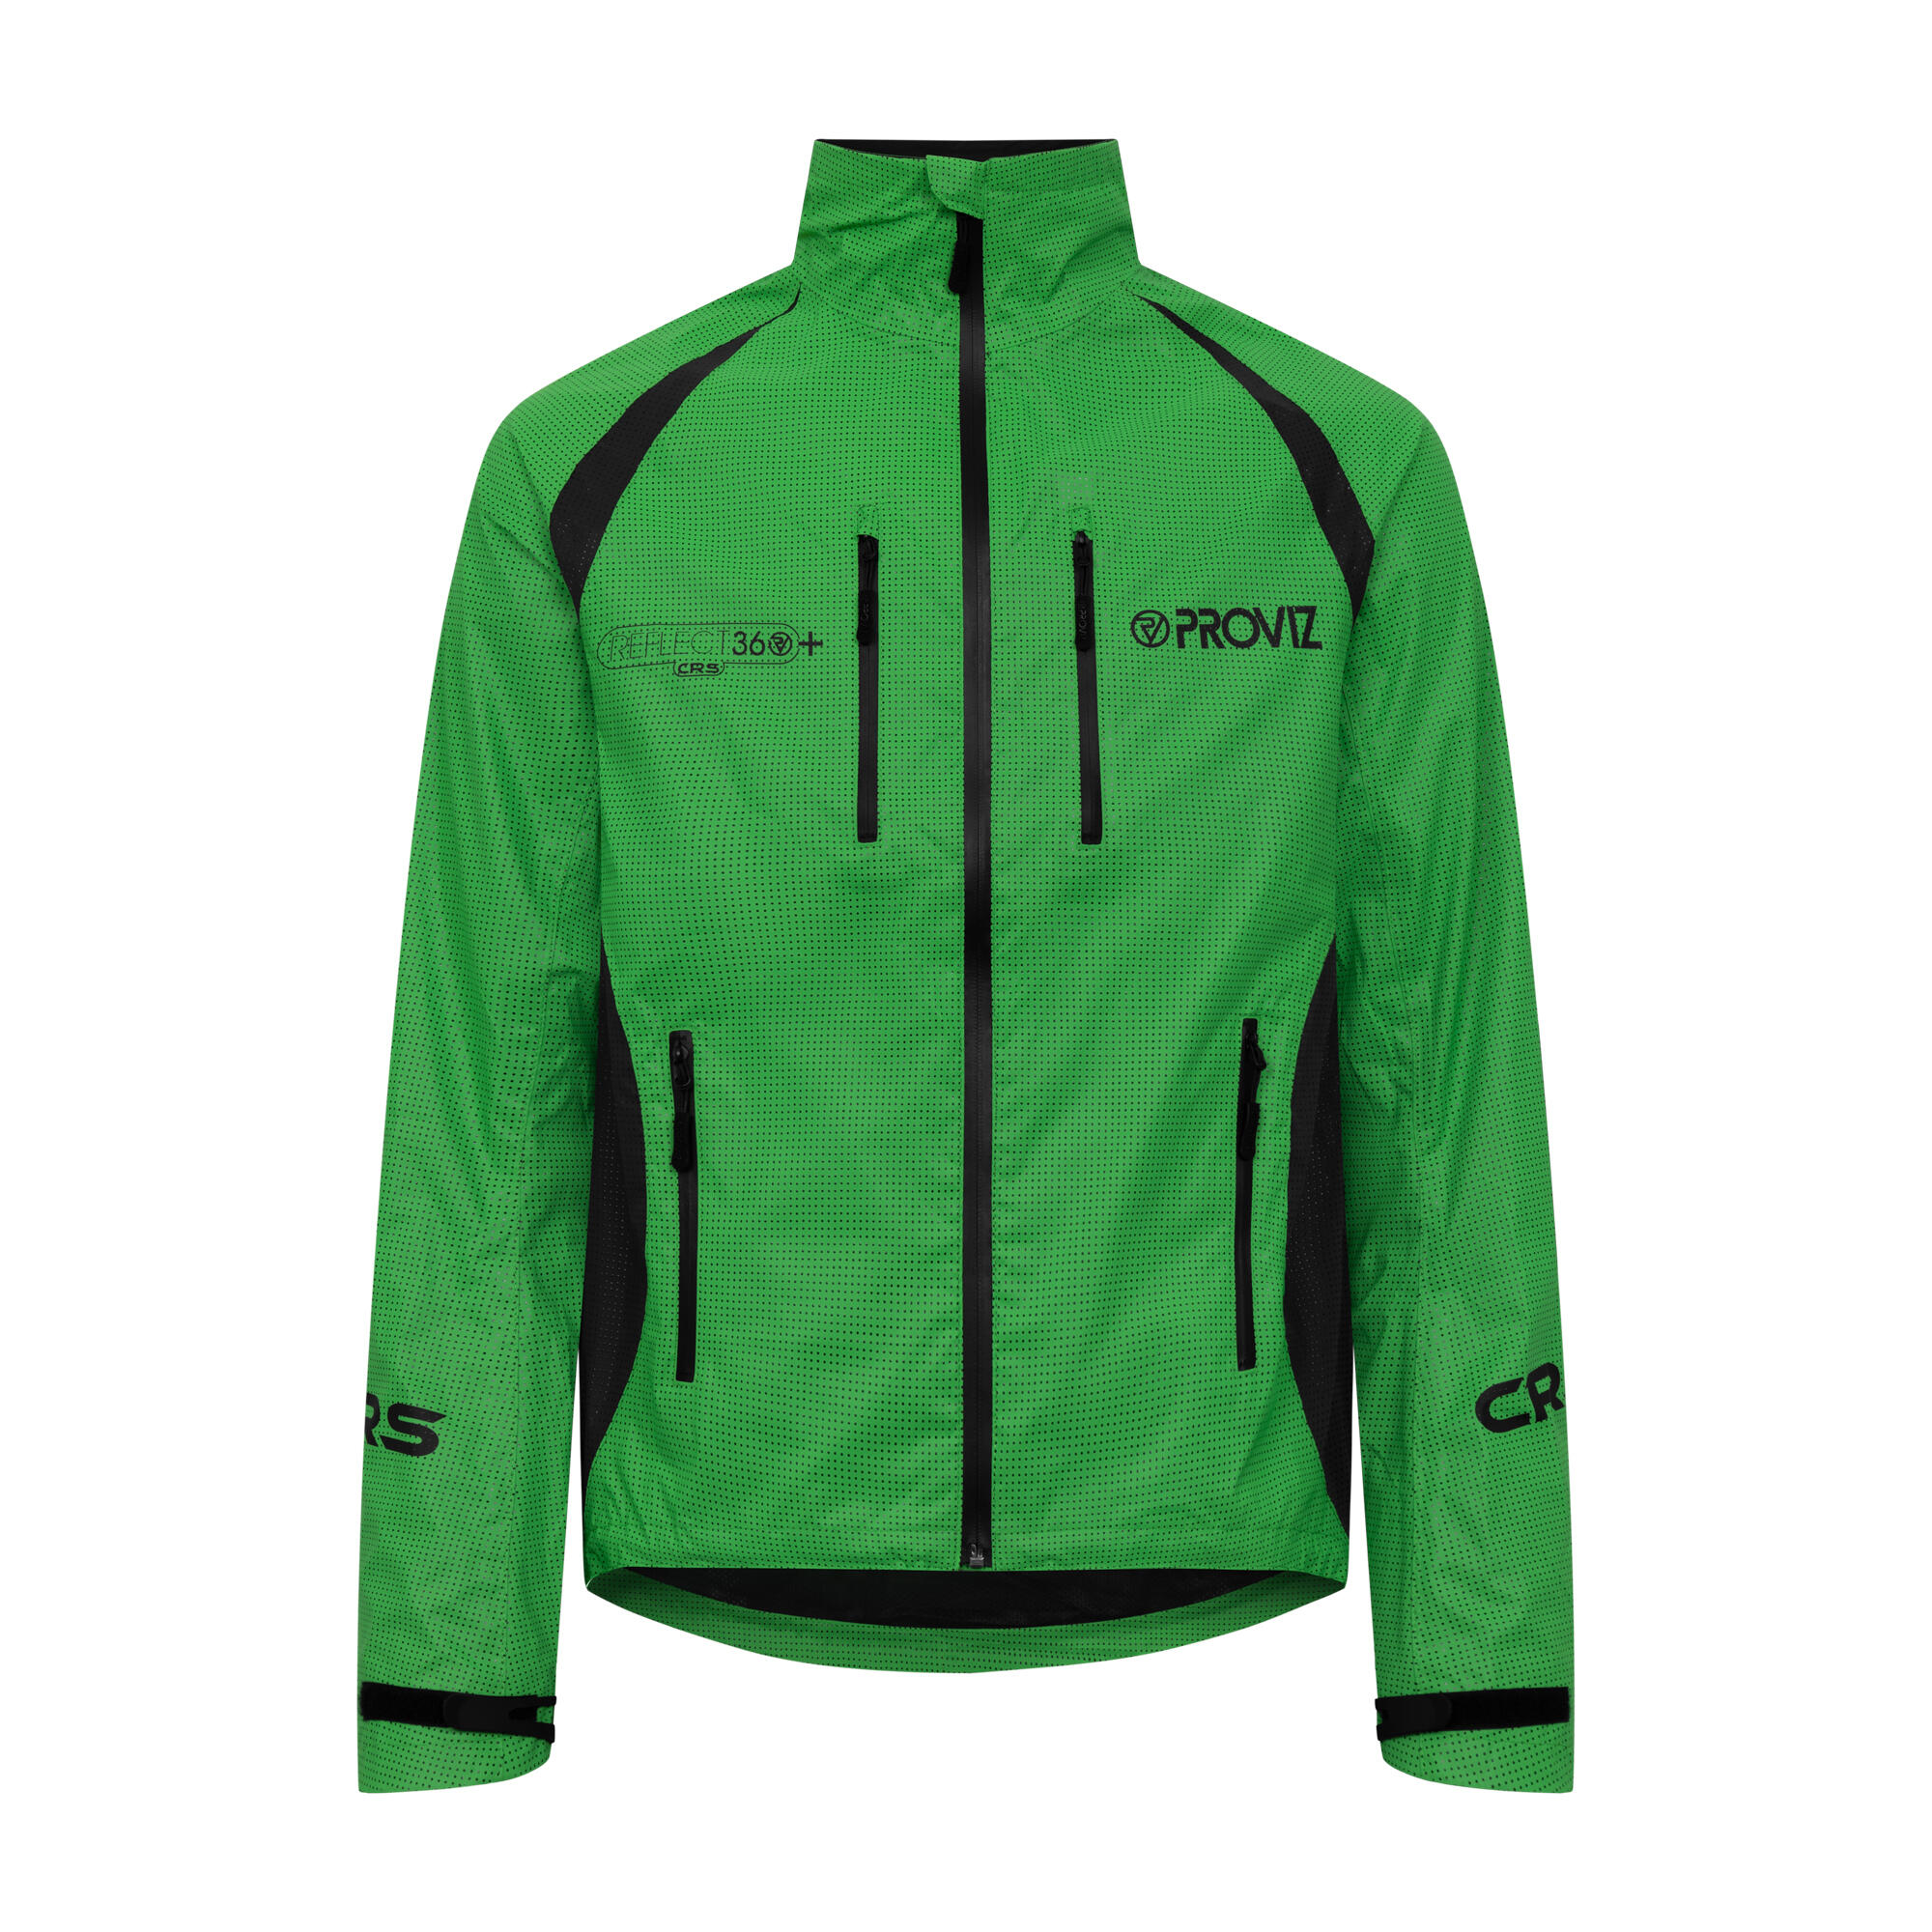 Proviz Men's REFLECT360 CRS Plus Waterproof Reflective Cycling Jacket 1/8